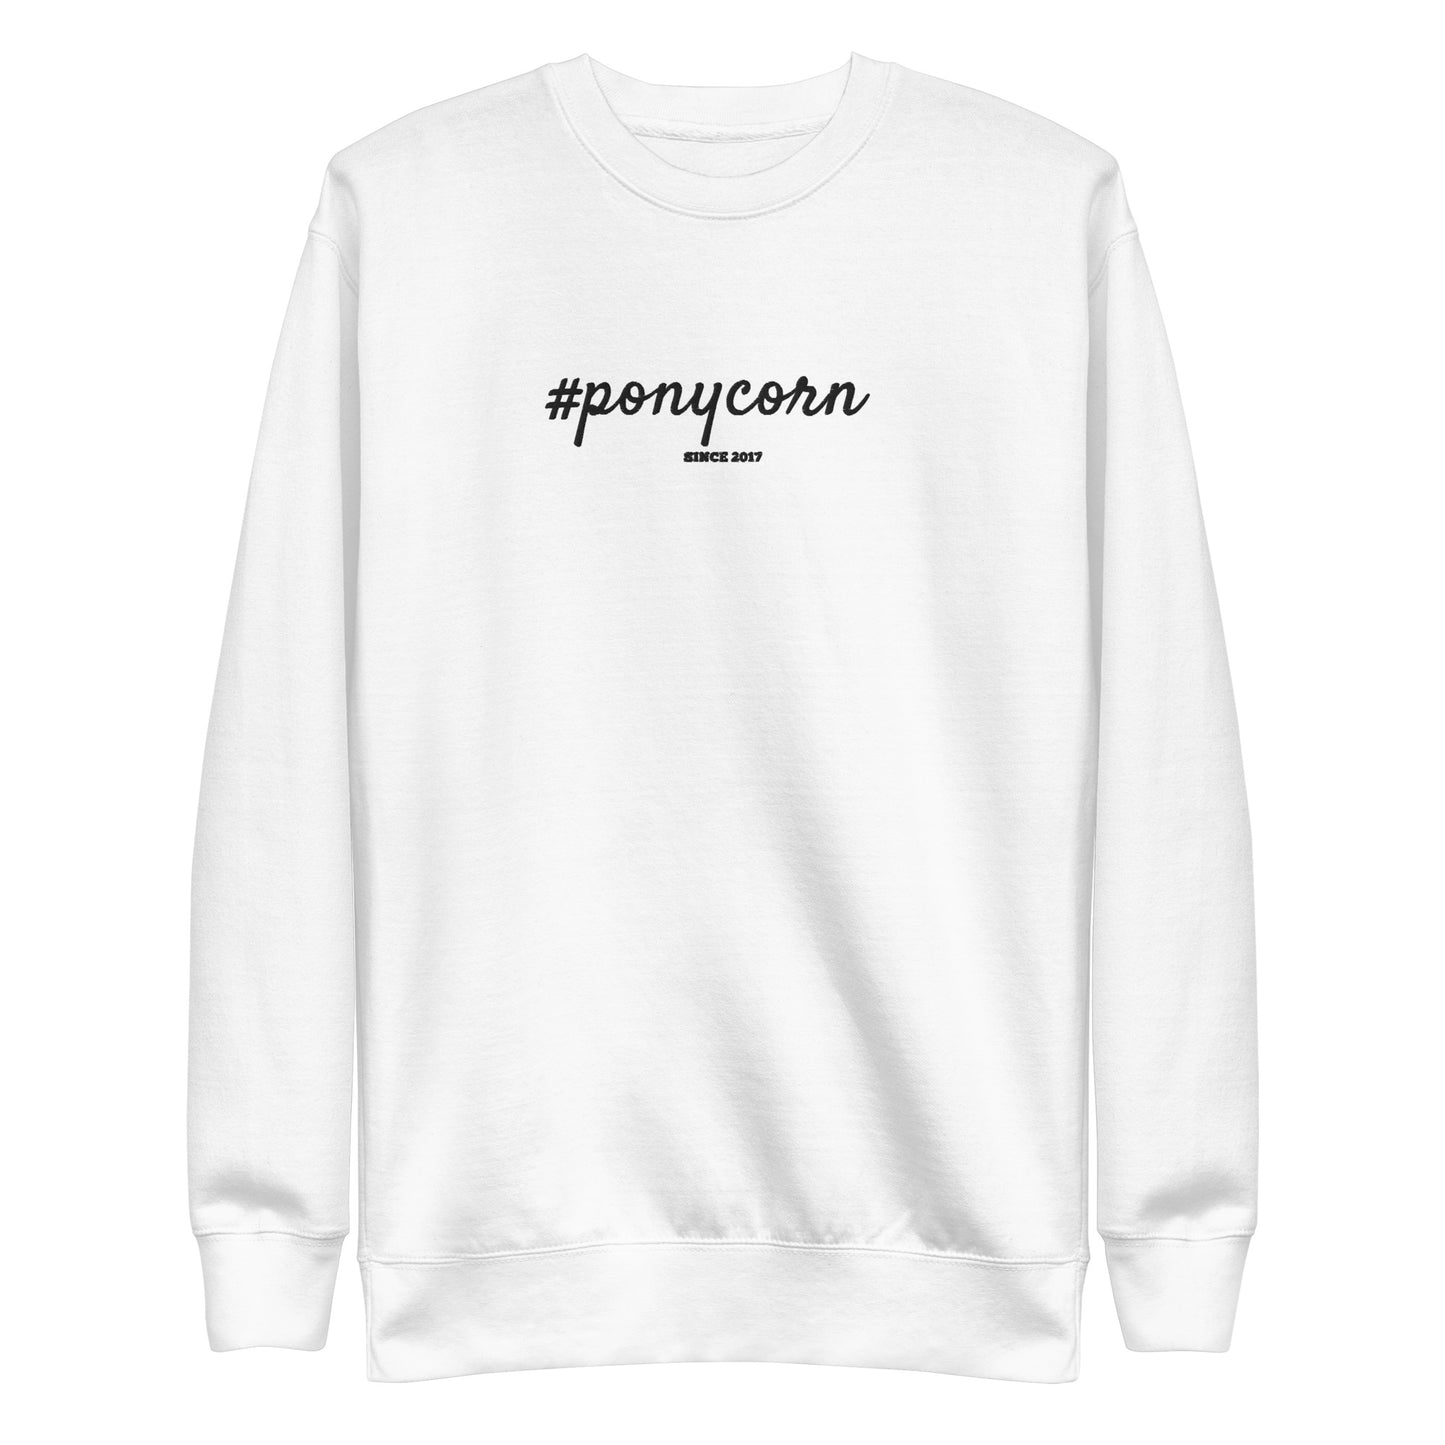 Sweatshirt premium #ponycorn